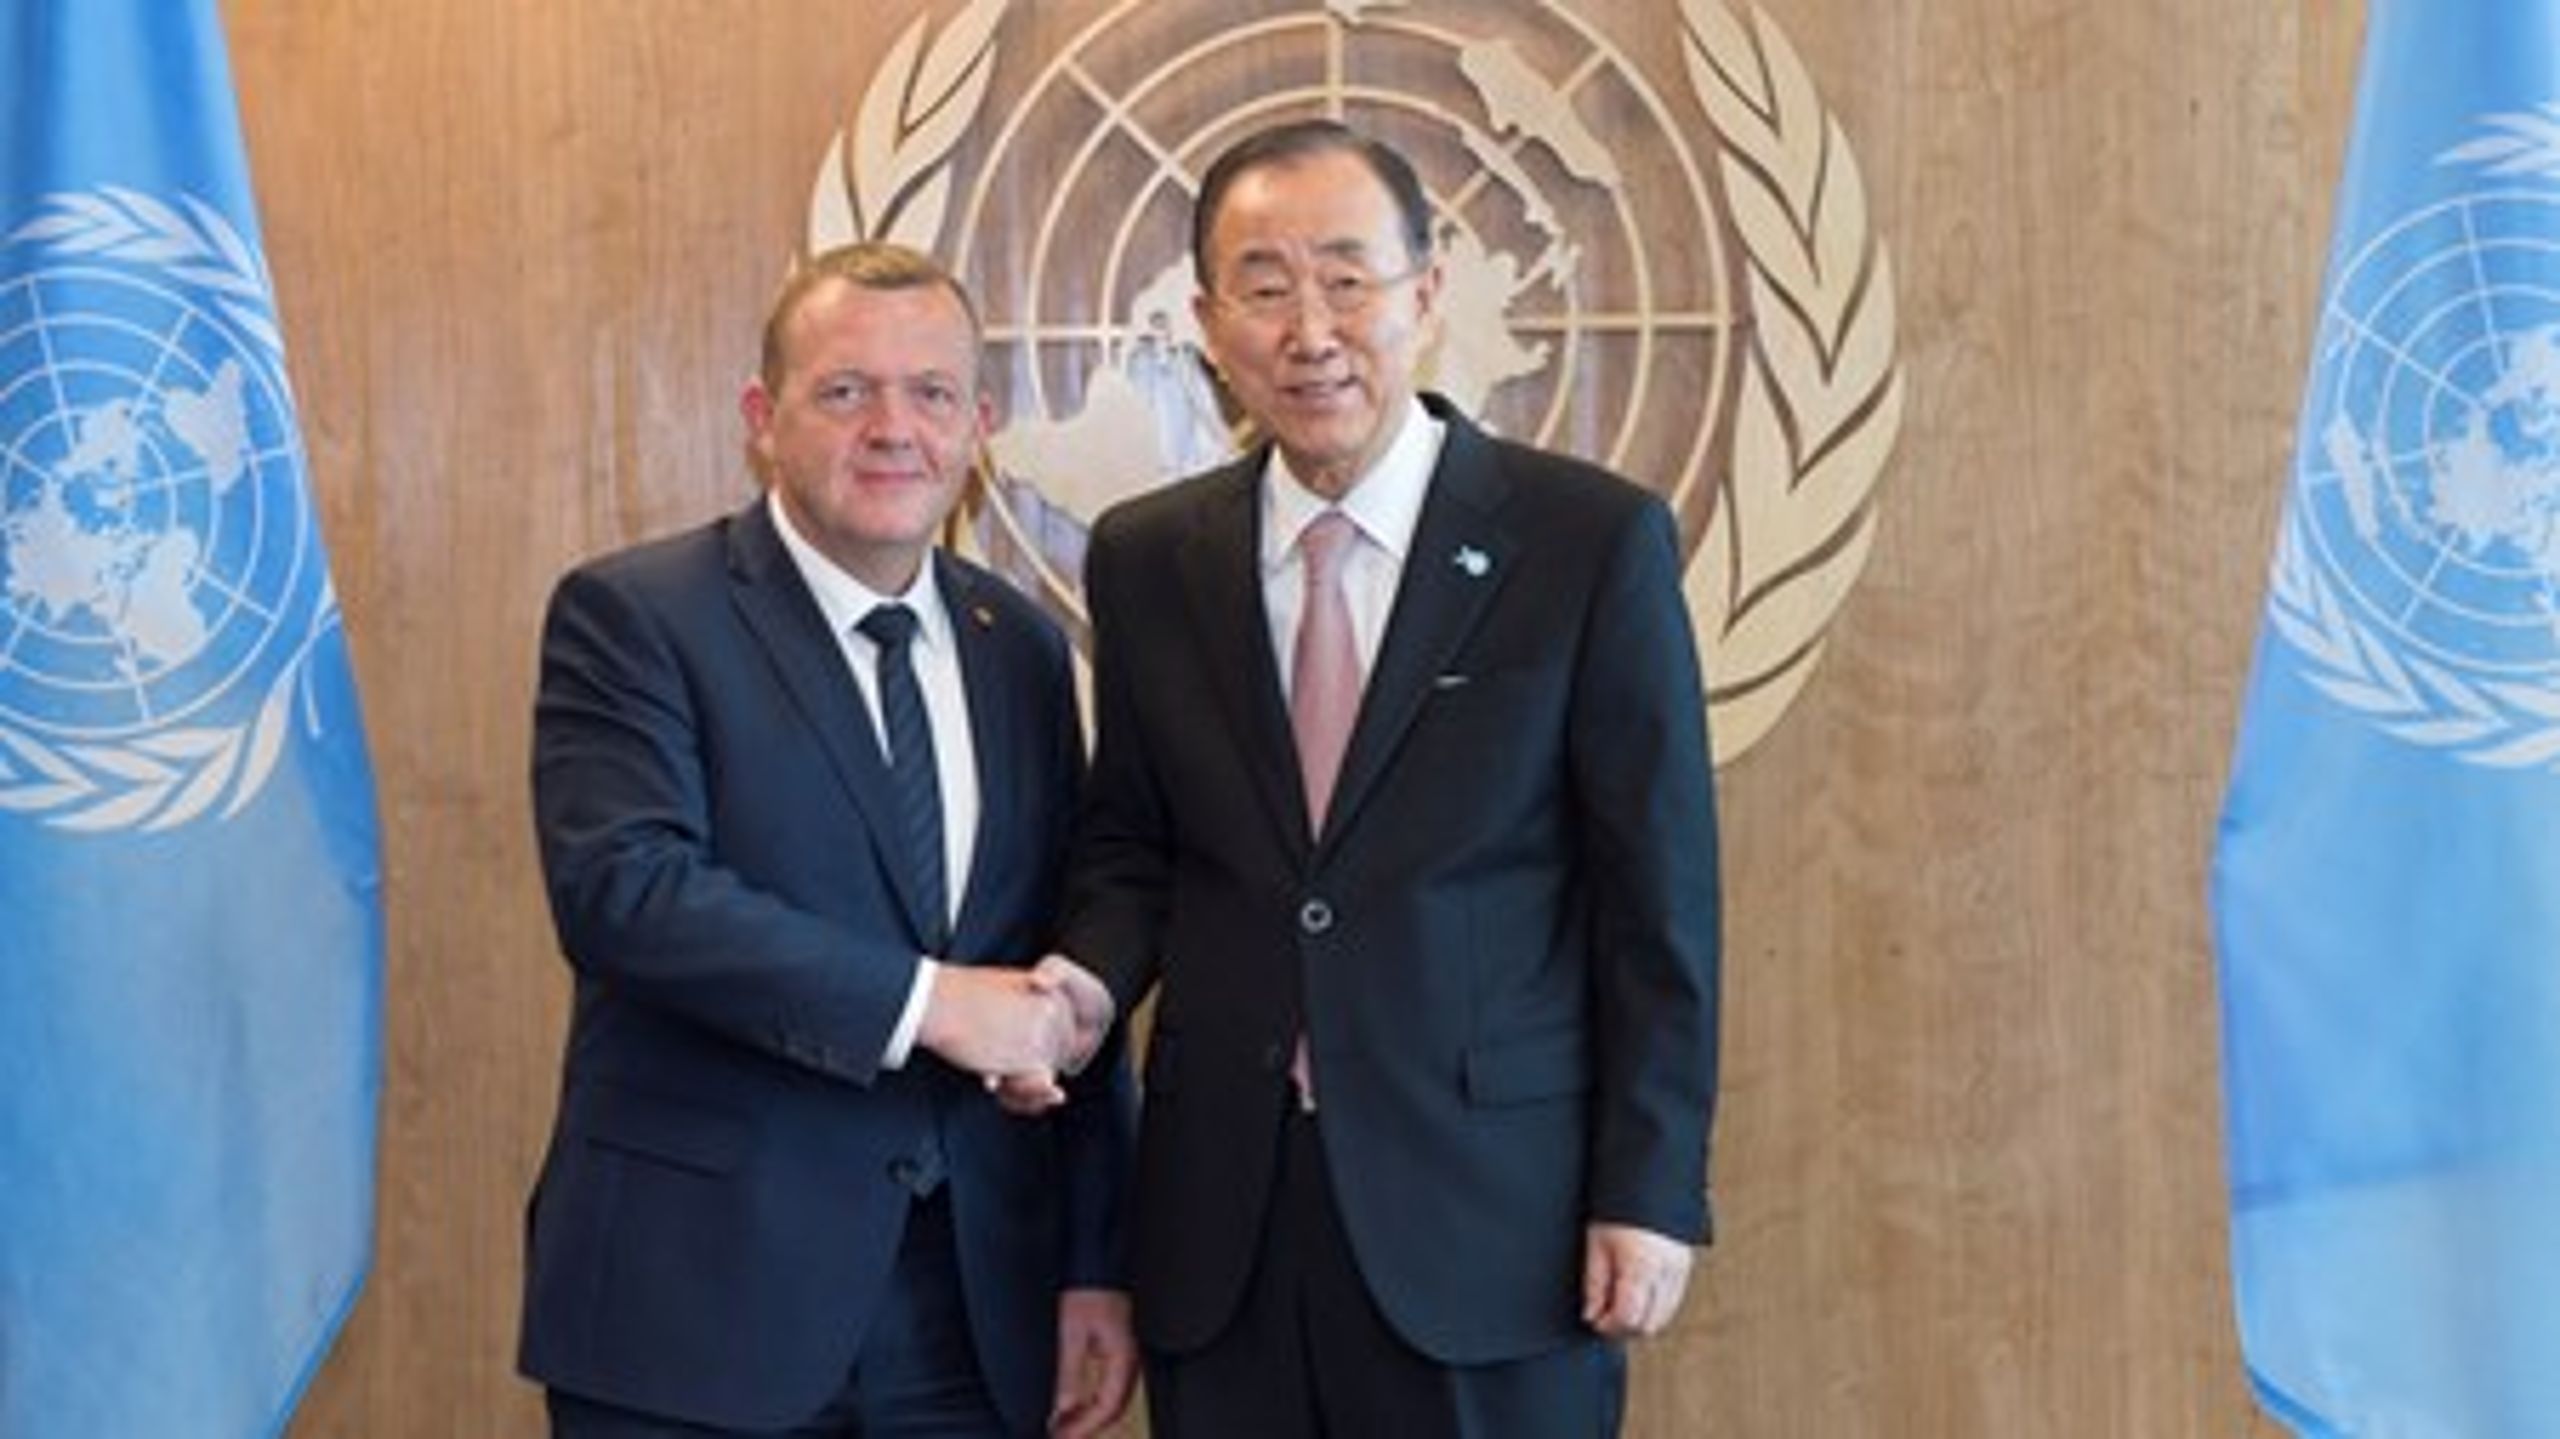 For halvanden uge siden bankede statsminister Lars Løkke Rasmussen med hammeren i FN's generalforsamling i New York og erklærede FN's nye verdensmål for vedtaget.